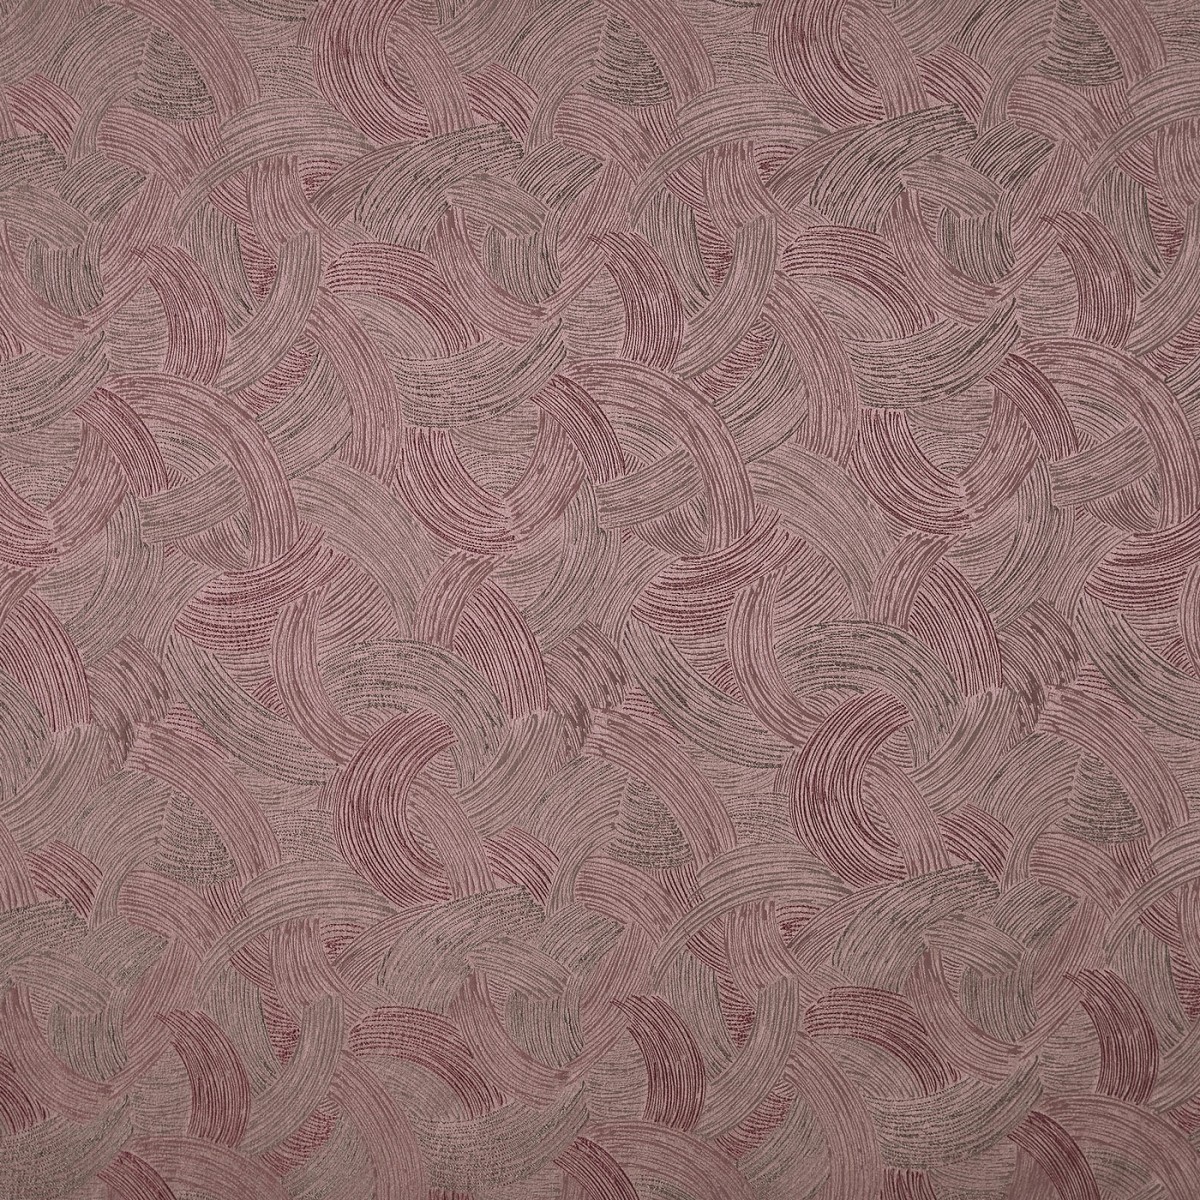 Sagittarius Quartz Fabric by Prestigious Textiles